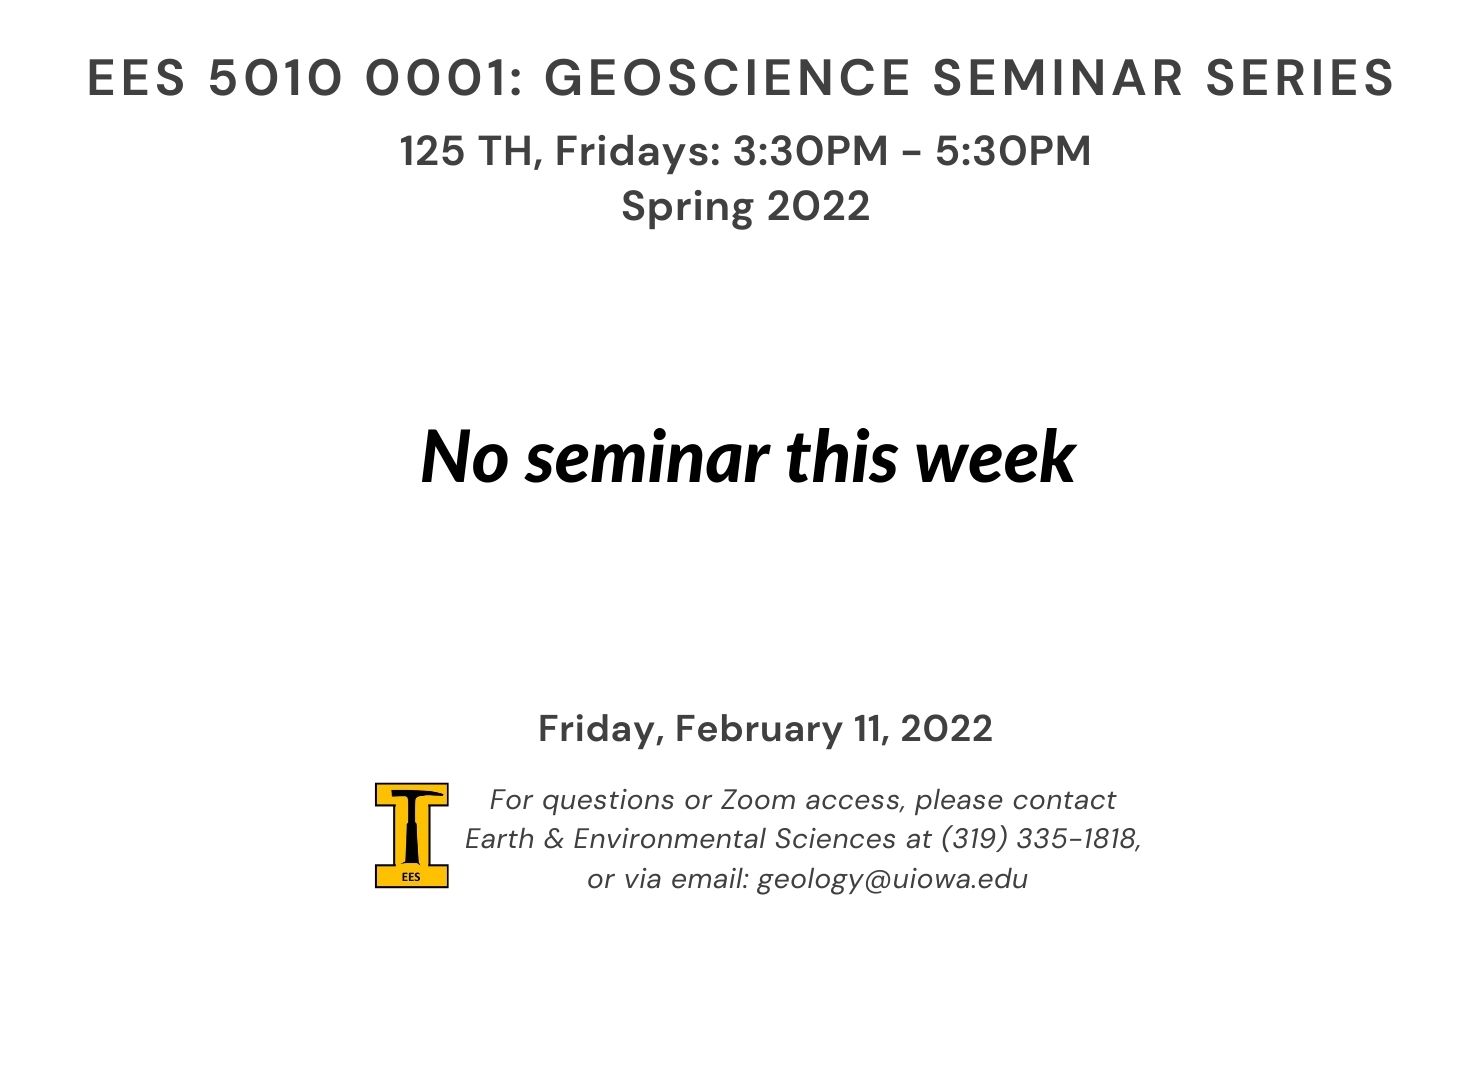 Seminar Flyer Spring 2022